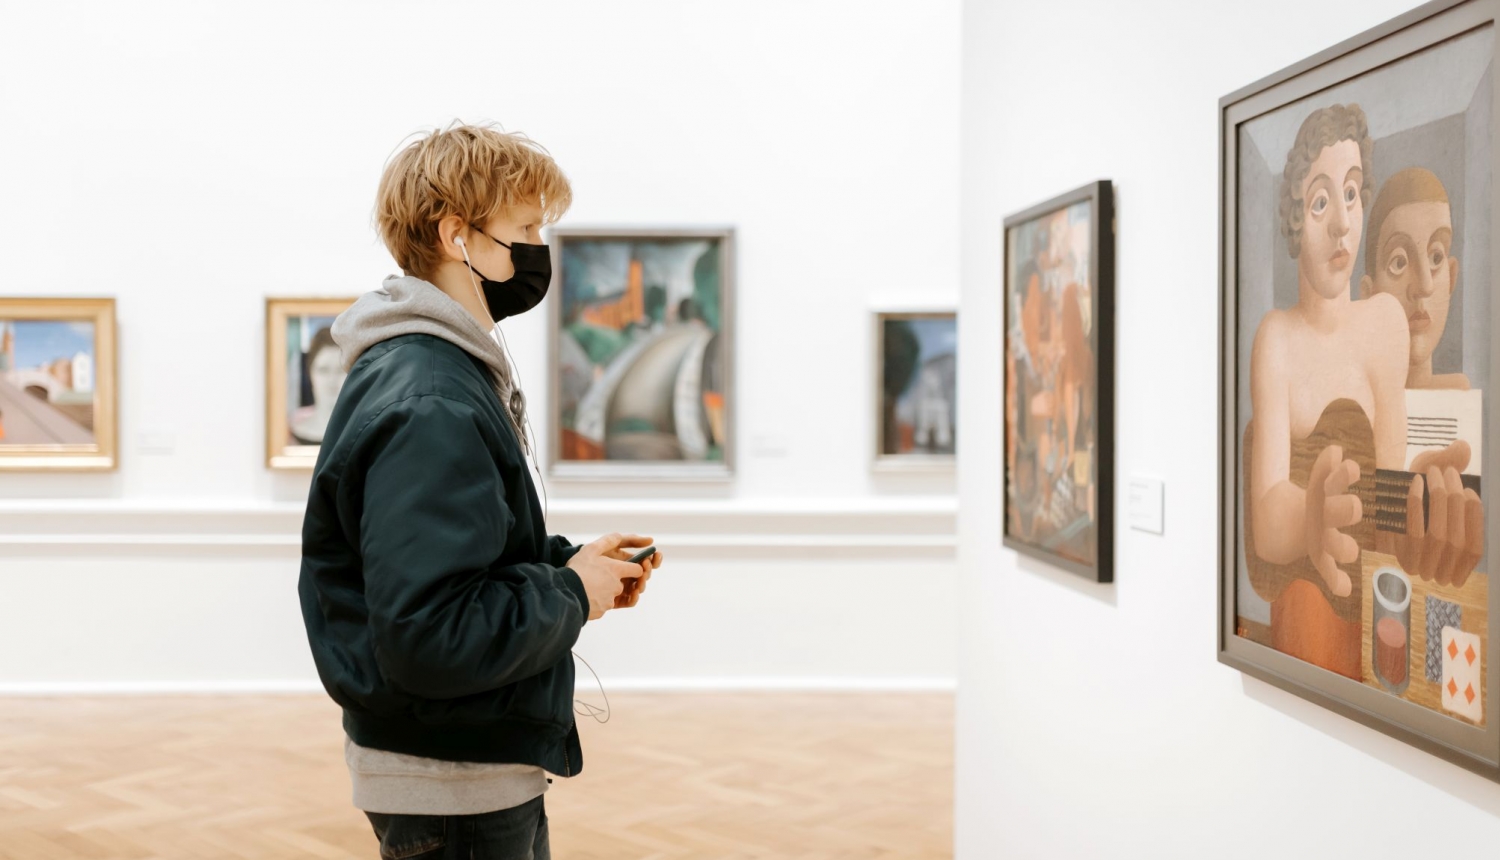 Latvijas Nacionālā mākslas muzeja mobilā lietotne “Labsajūtas maršruts”. 2021. Foto: Kristiāna Zelča